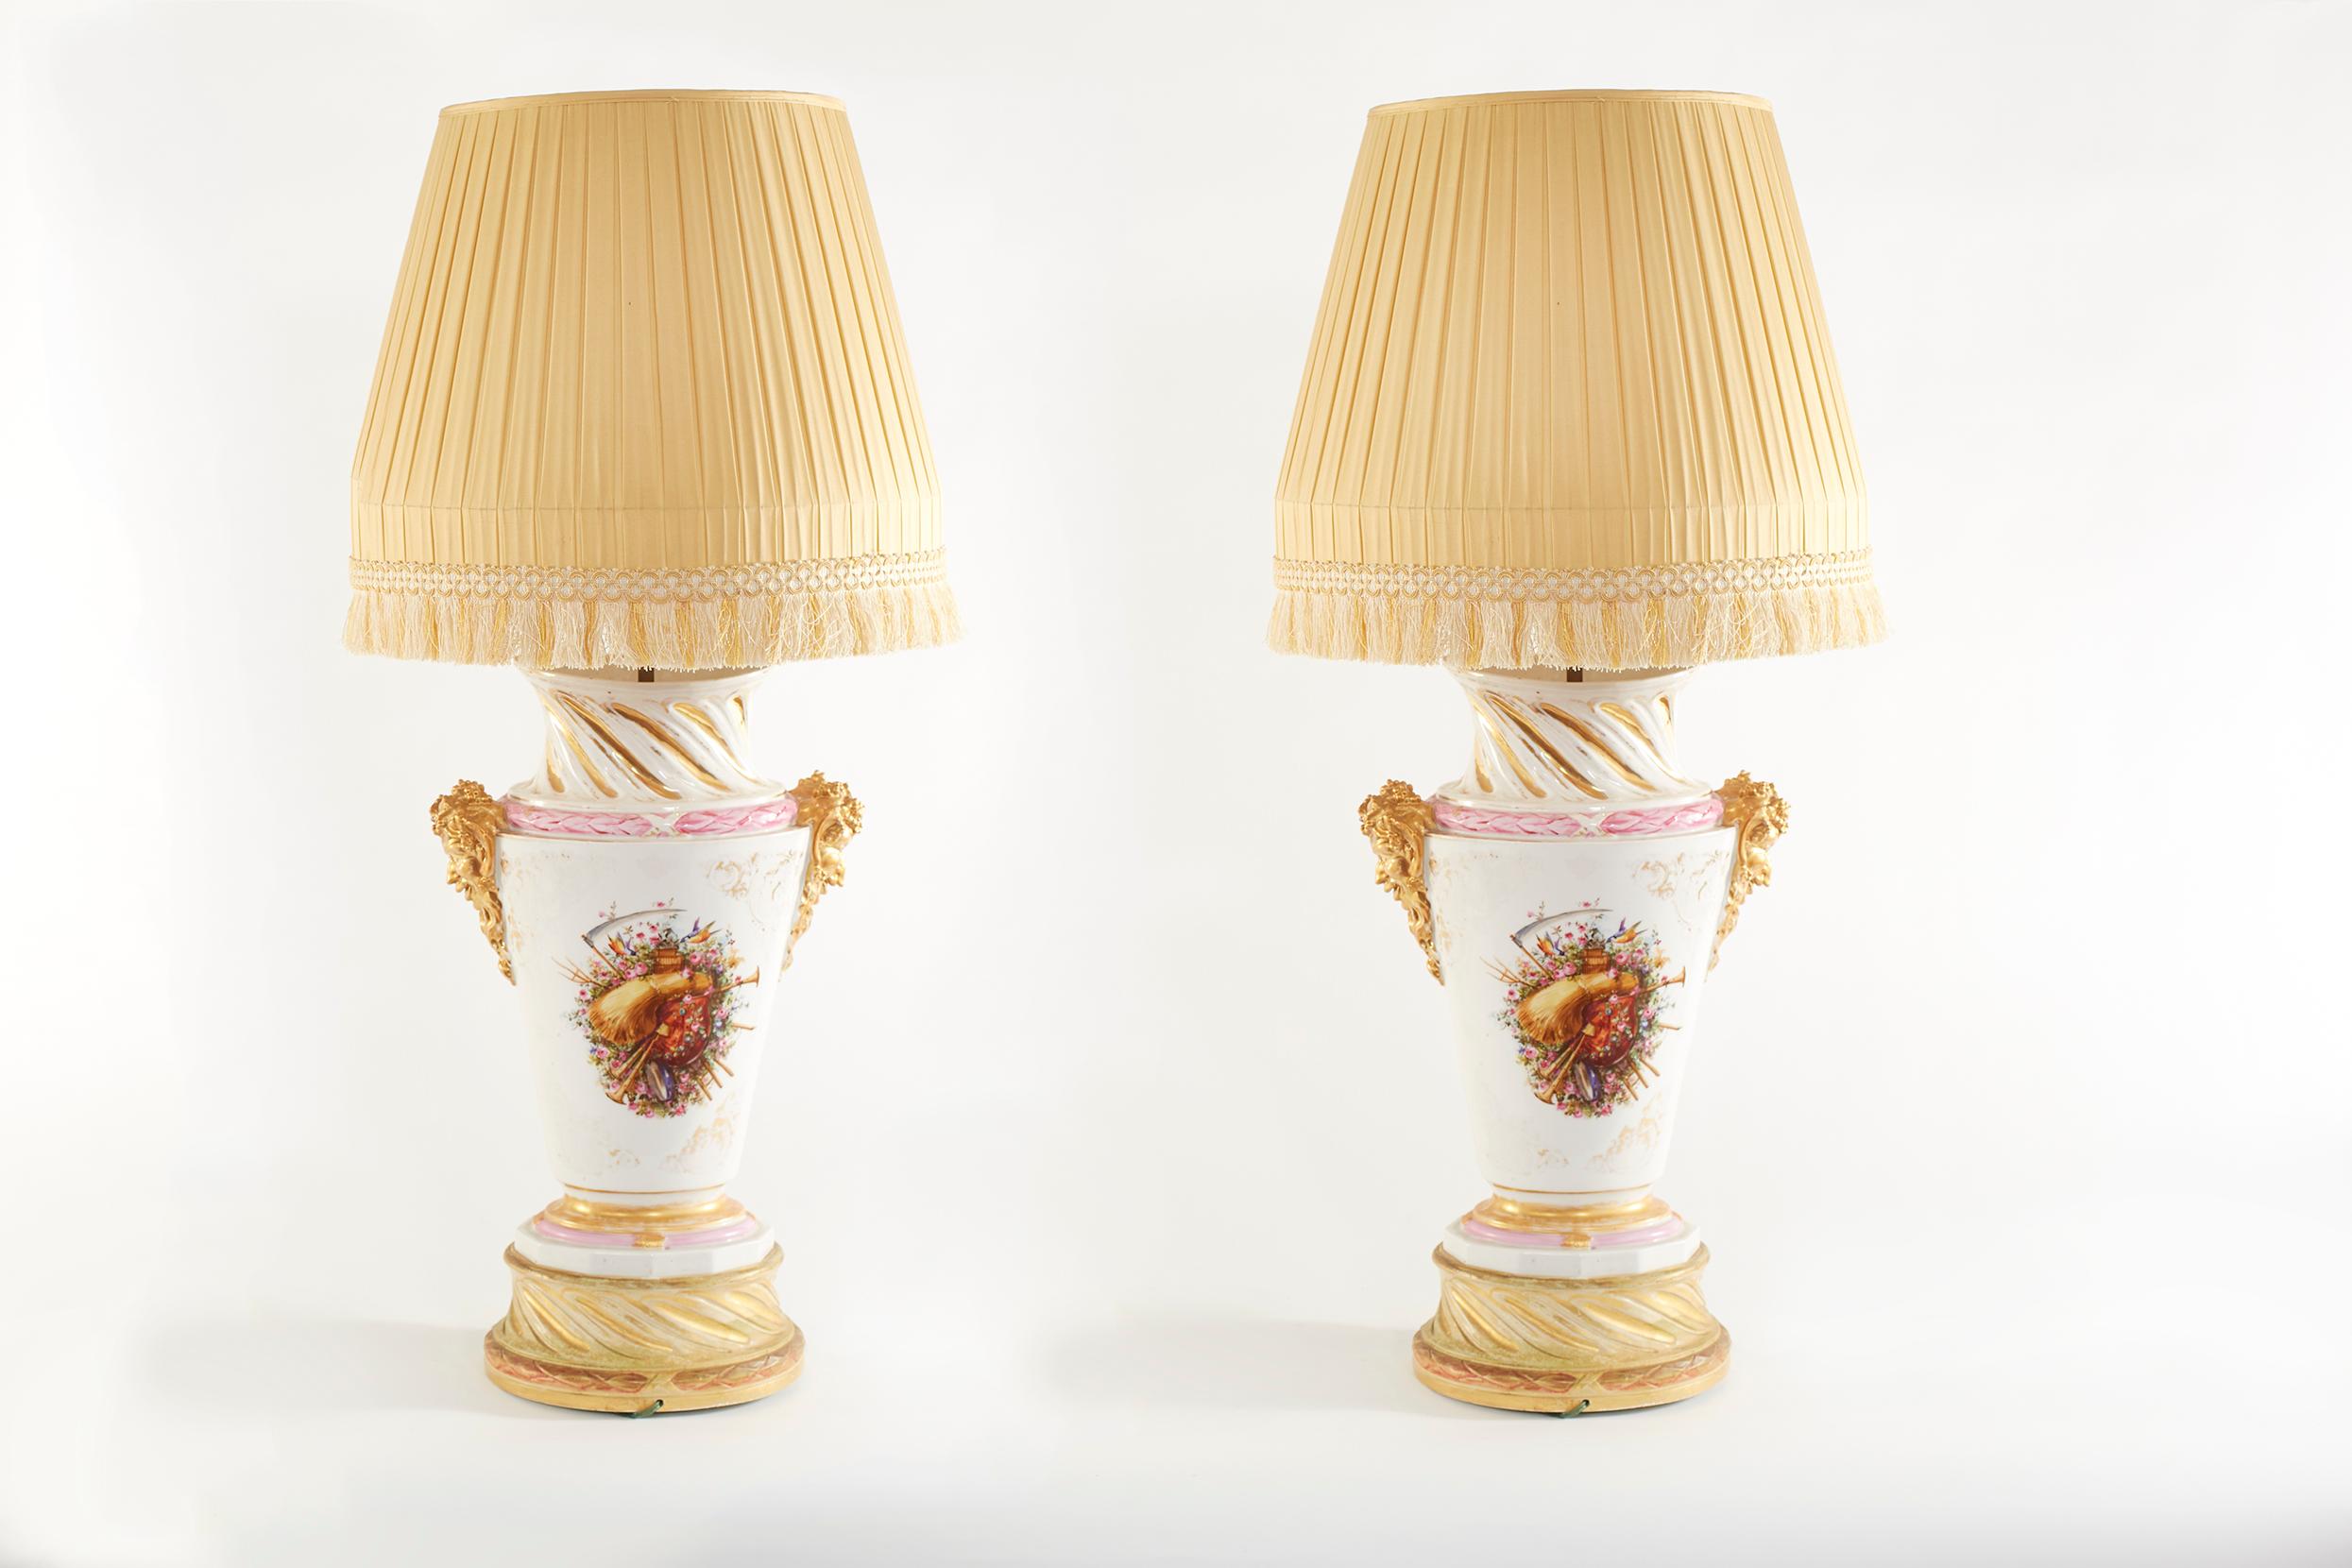 Großes Paar vergoldetes Porzellan Urne Form mit äußeren floralen Design Details Tisch / Aufgabe Lampen. Jede Lampe ist in gutem Zustand. Leichte alters- und gebrauchsbedingte Gebrauchsspuren. Jede Lampe stehen etwa 38,5 cm hoch x 18 cm breit. Jeder